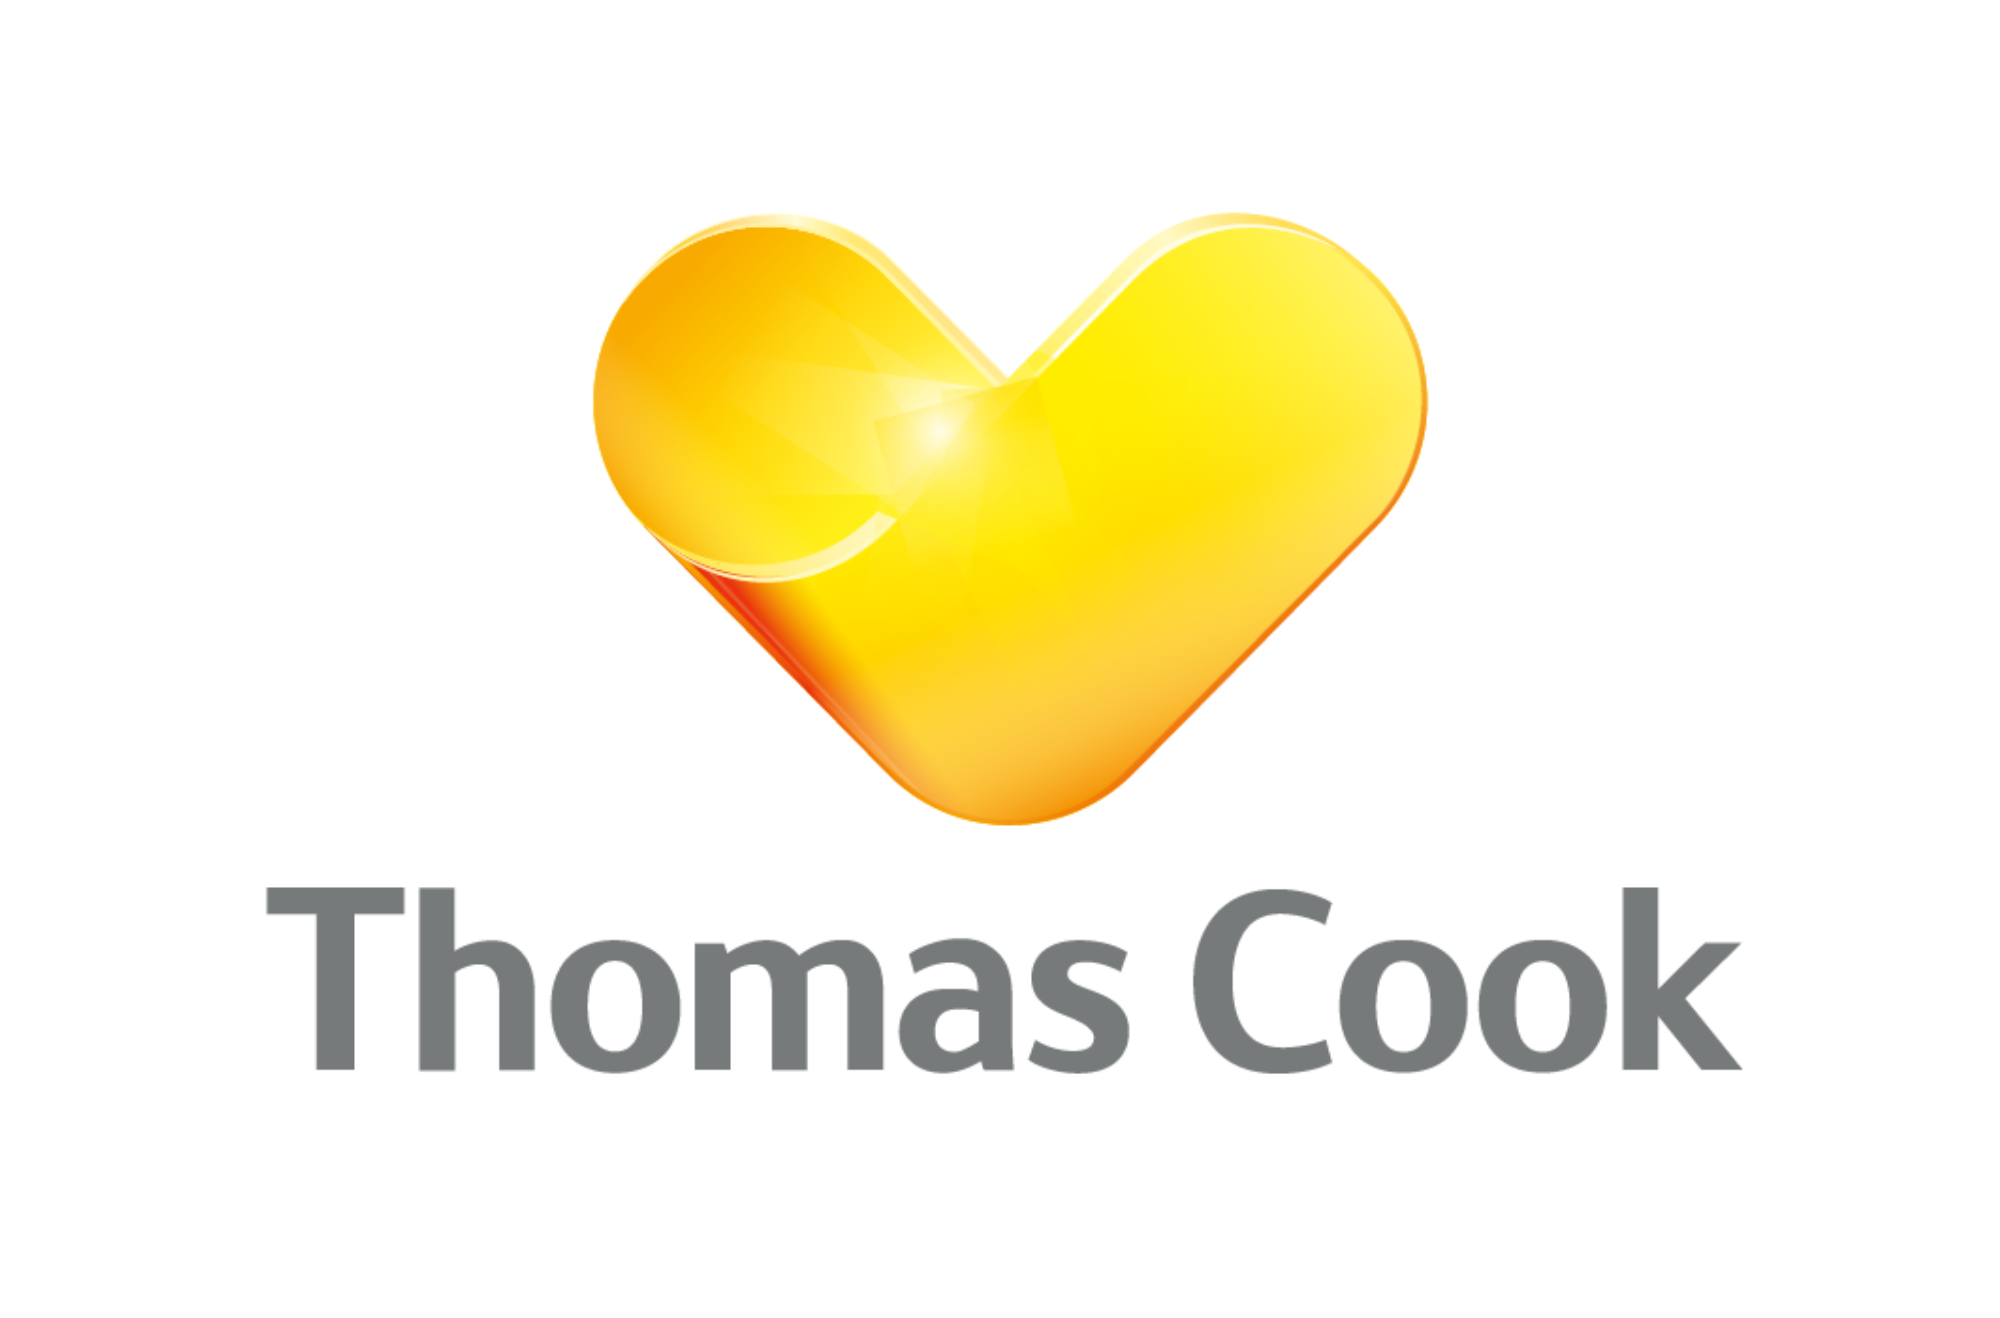 Thomas cook logo